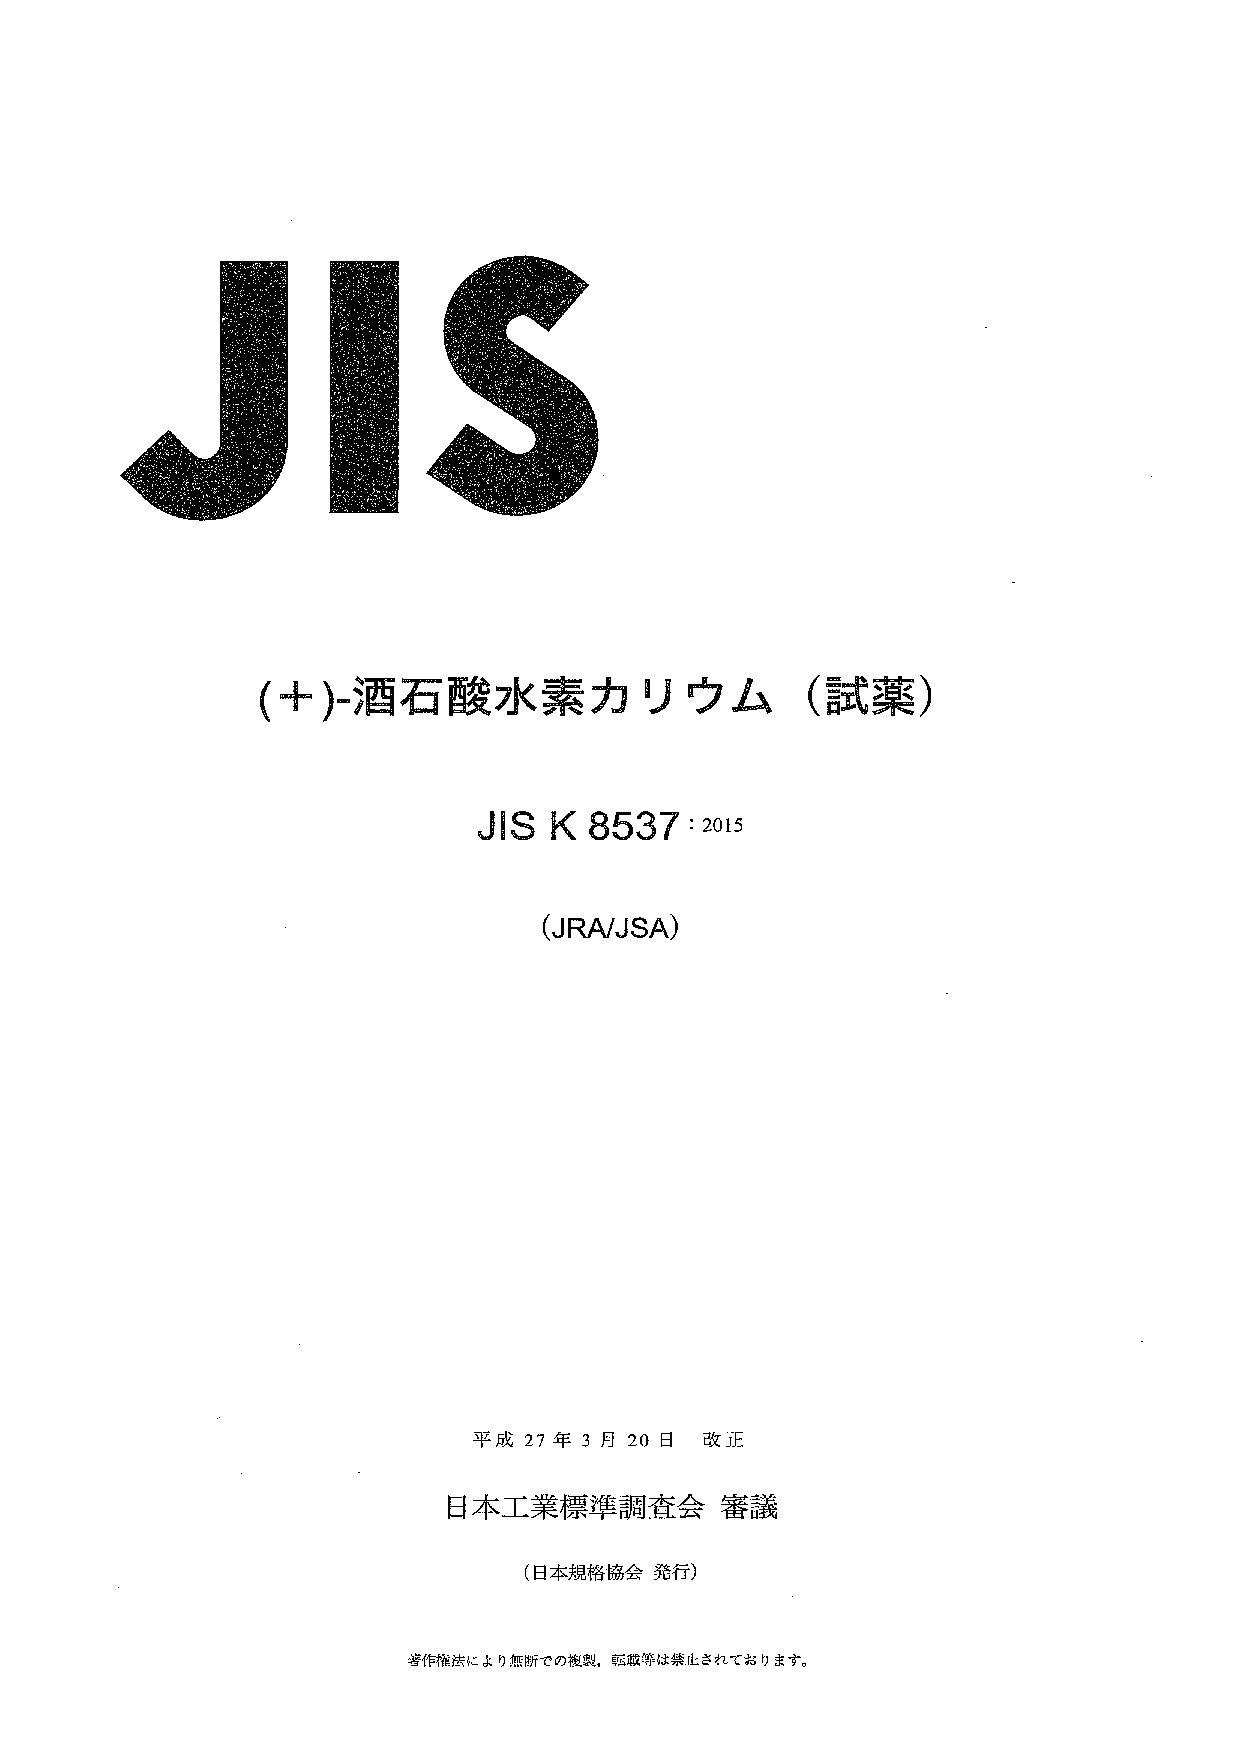 JIS K 8537:2015